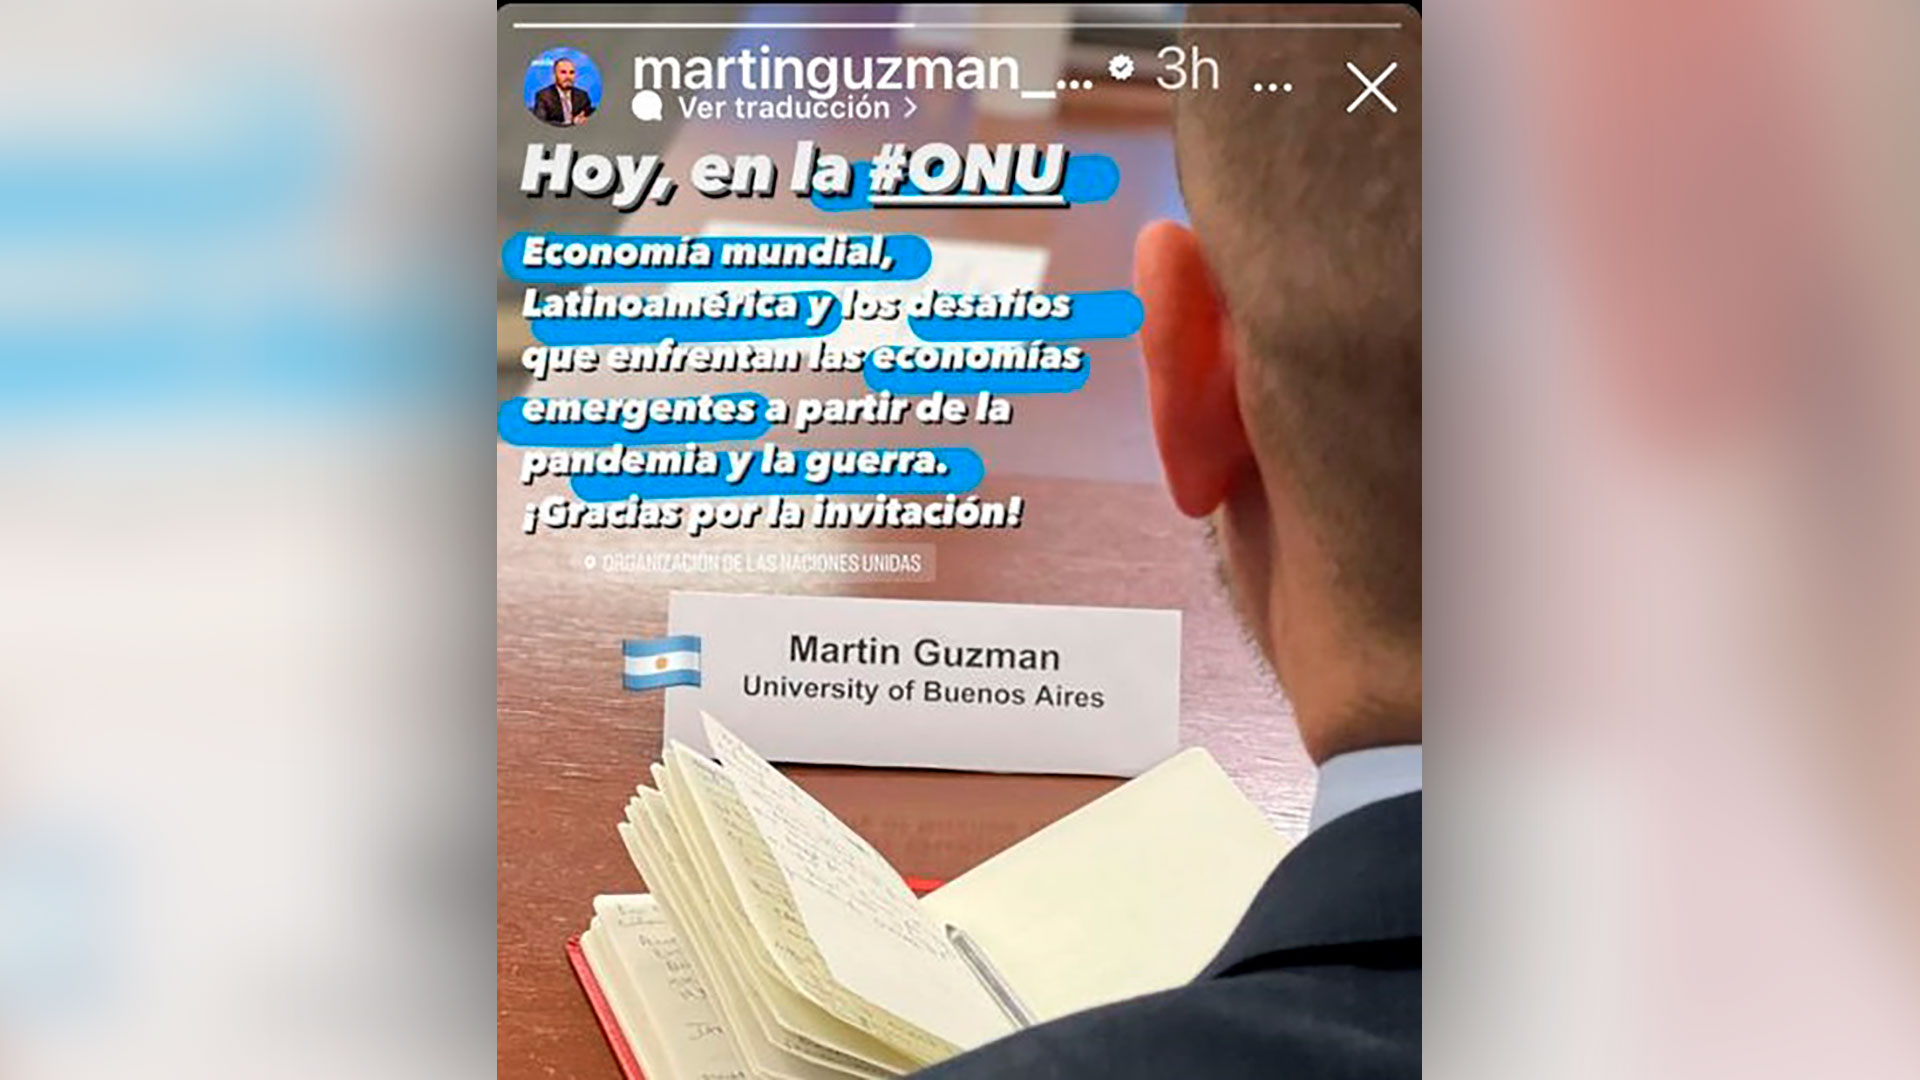 El posteo de Guzmán en Instagram sobre el evento